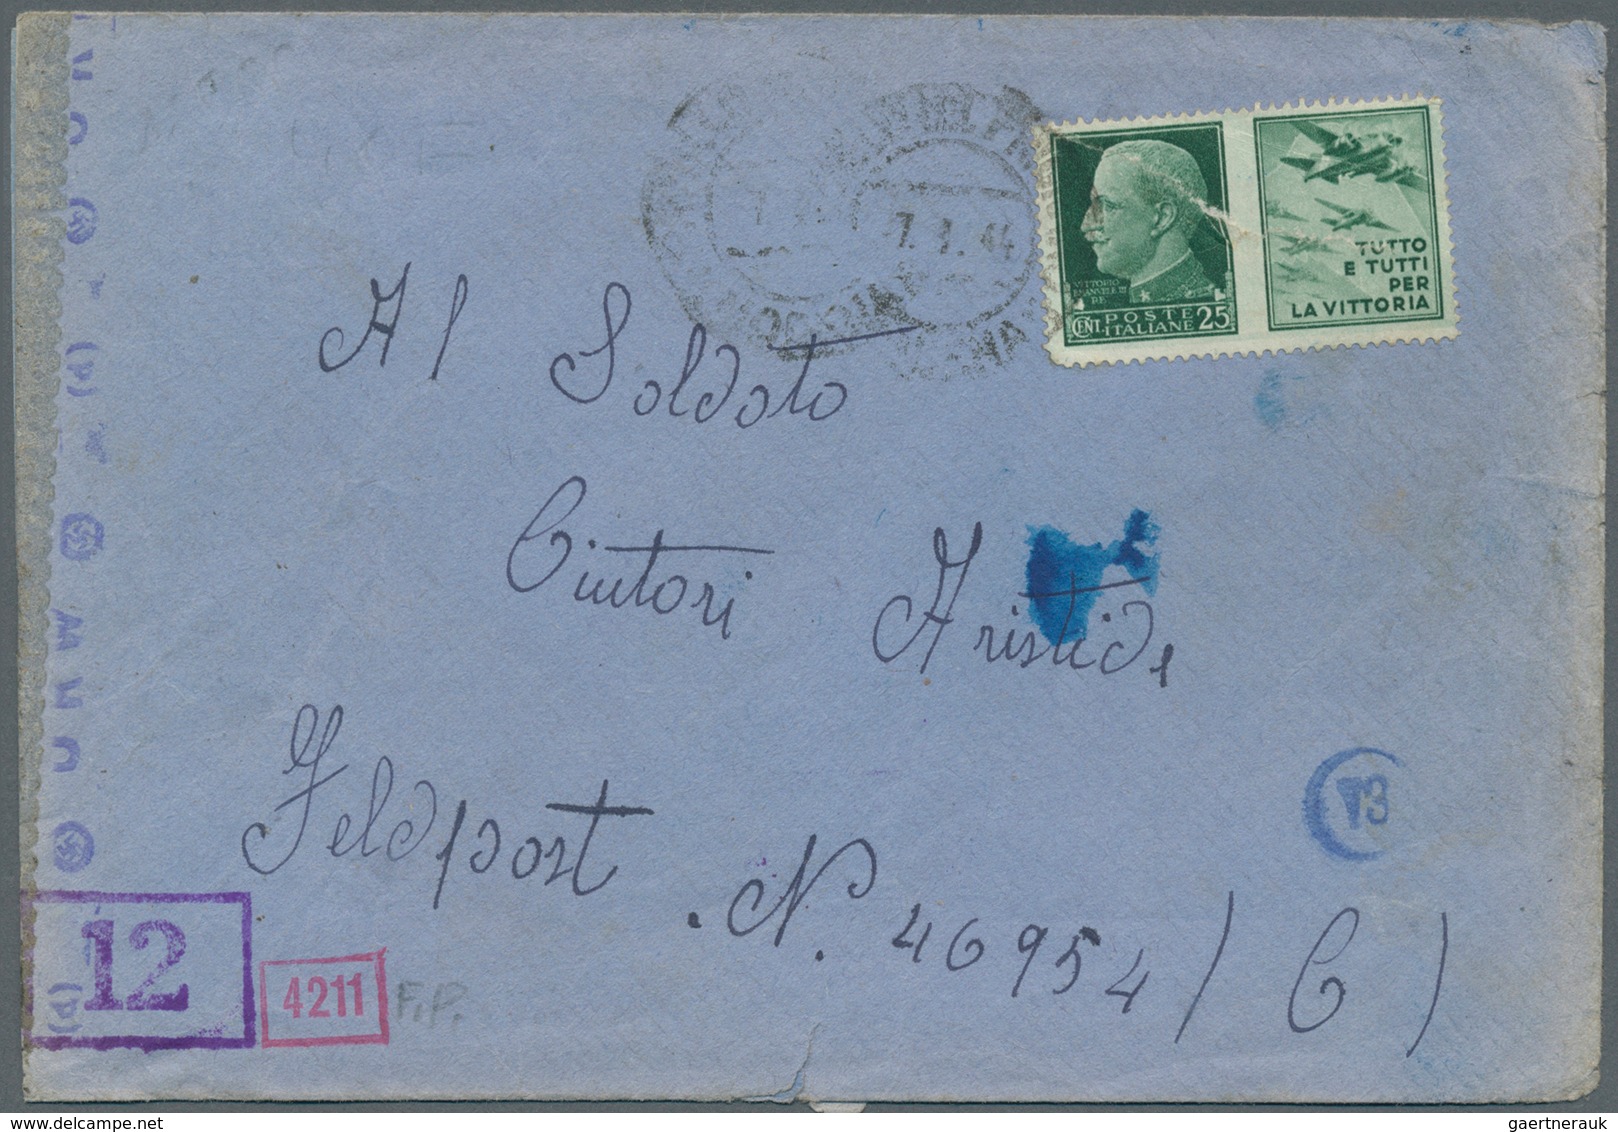 32039 Feldpost 2. Weltkrieg: 1939/1945, 66 teils bessere Belege, mit Briefen aus Italien an Feldpostnummer